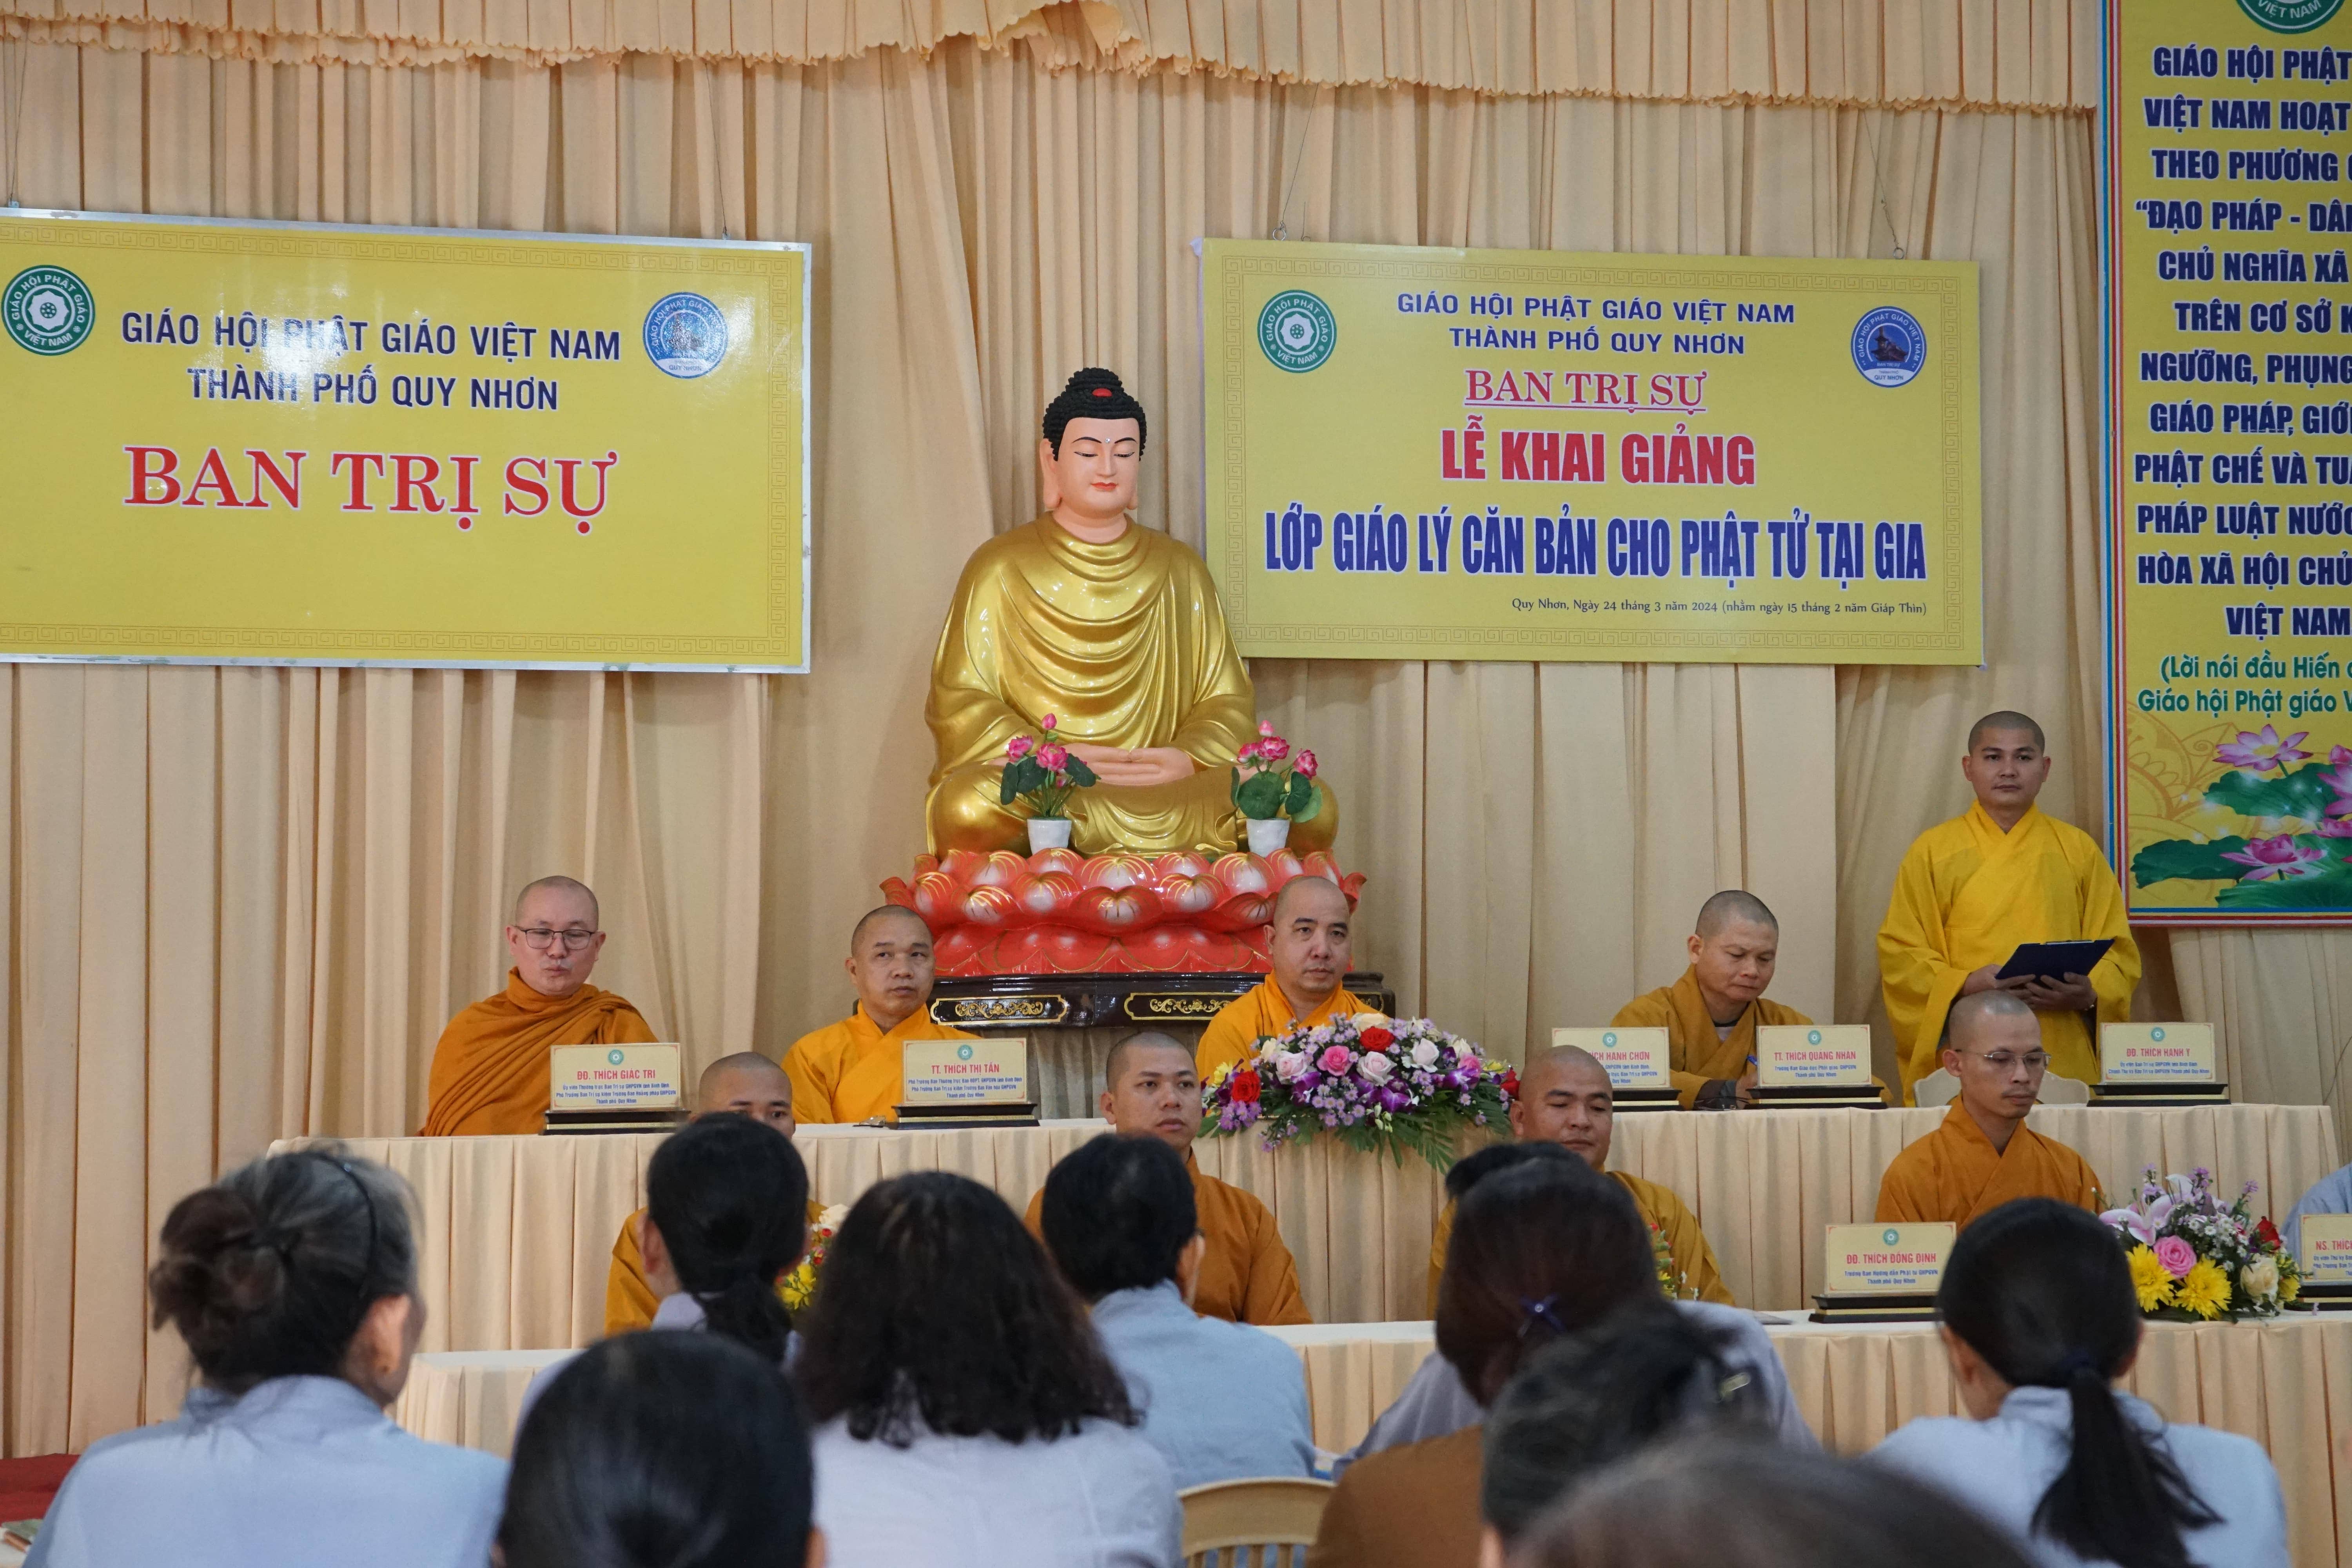 Ban Trị sự Phật giáo Quy Nhơn khai giảng lớp giáo lý căn bản cho Phật tử tại gia